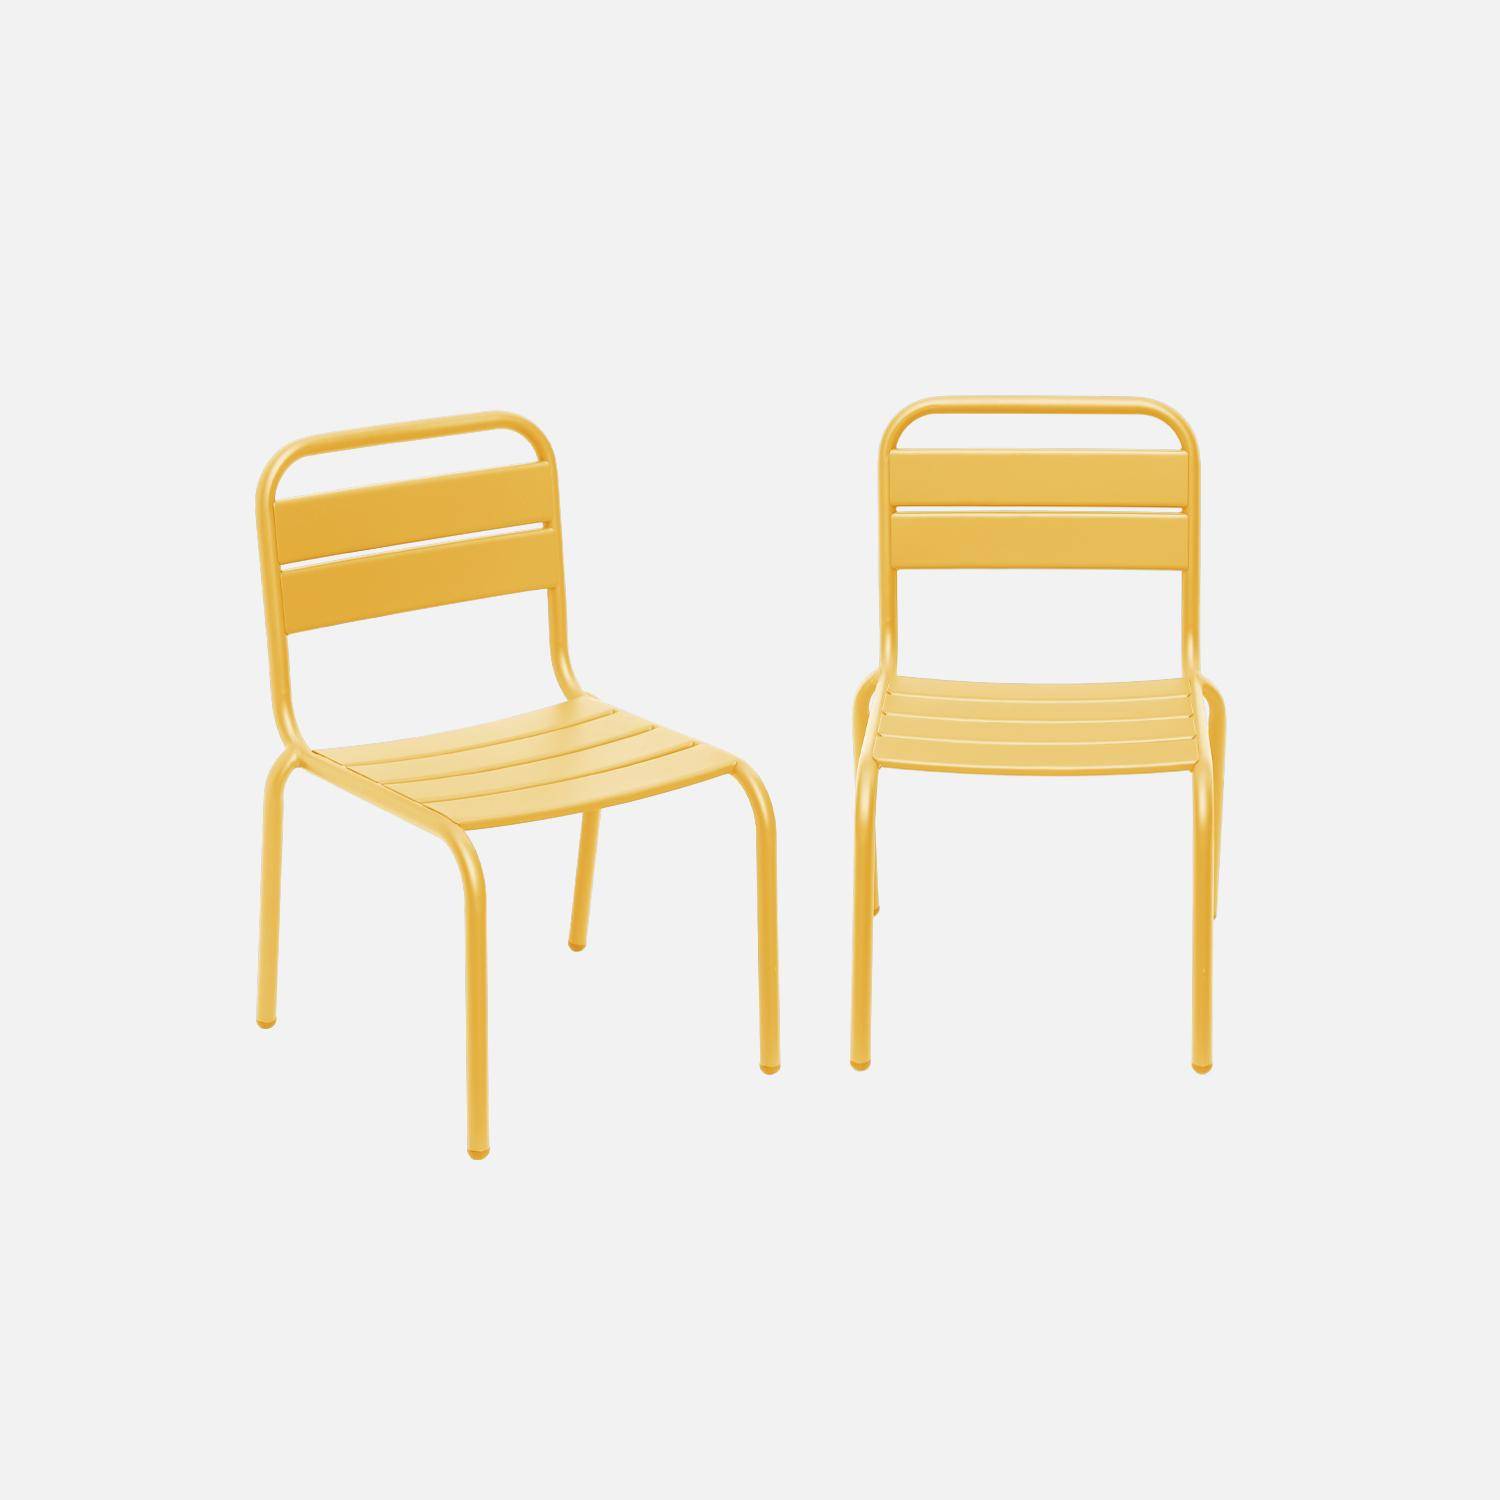 Conjunto de 2 cadeiras metálicas para crianças, Kristoff, Amarelo,sweeek,Photo1